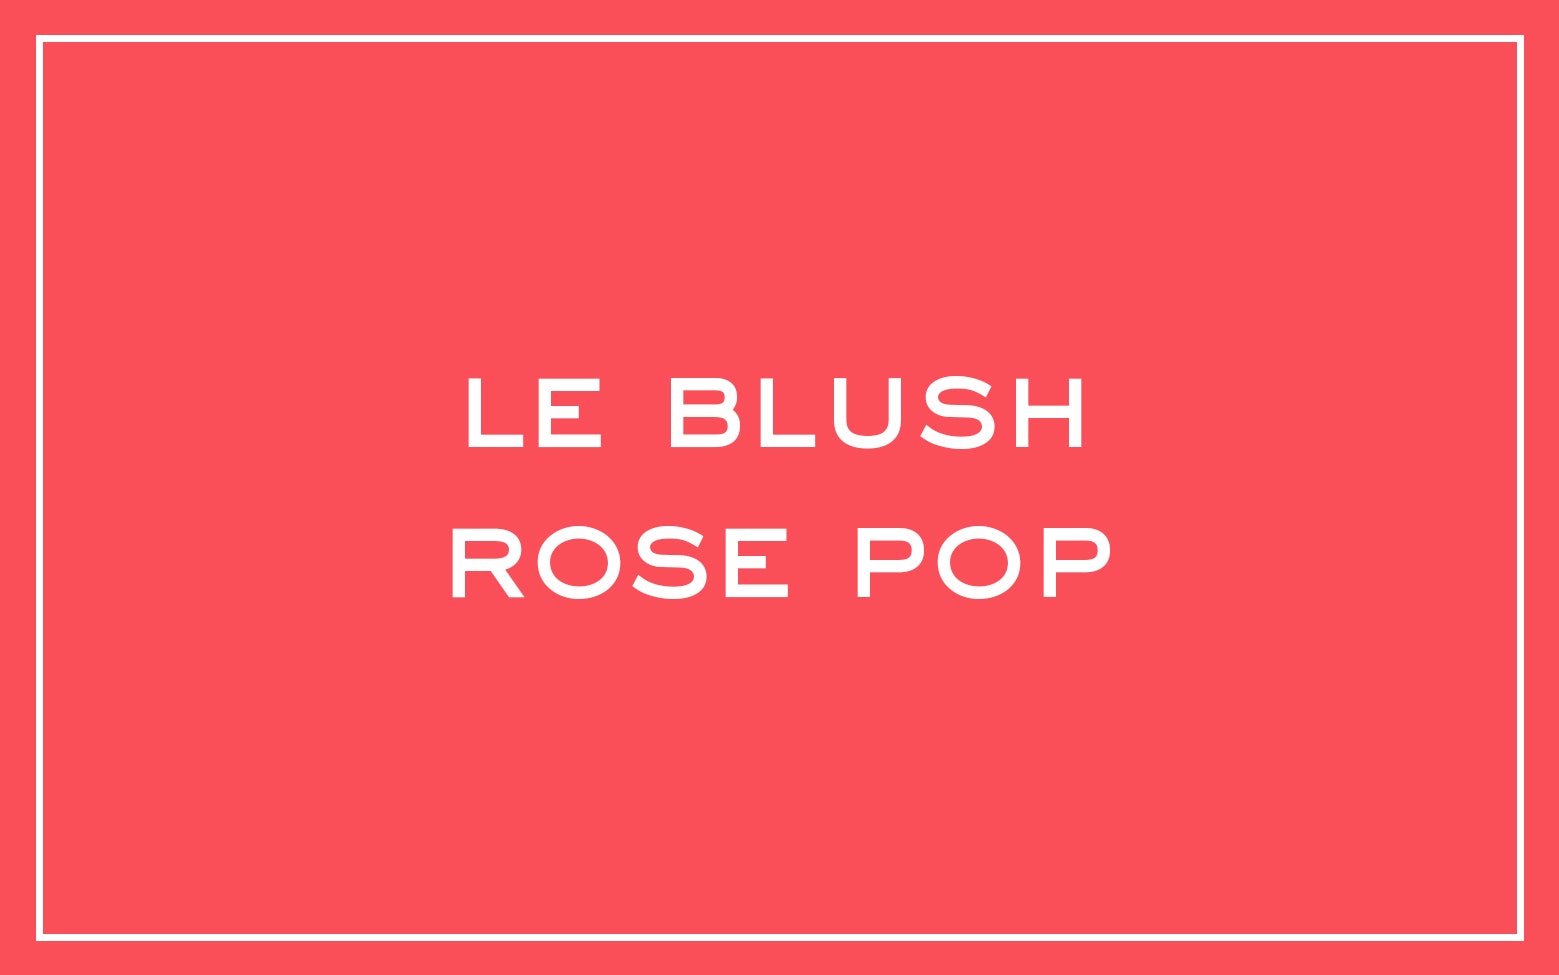 La bouche rouge nuance Le Blush Rose Pop avec du texte